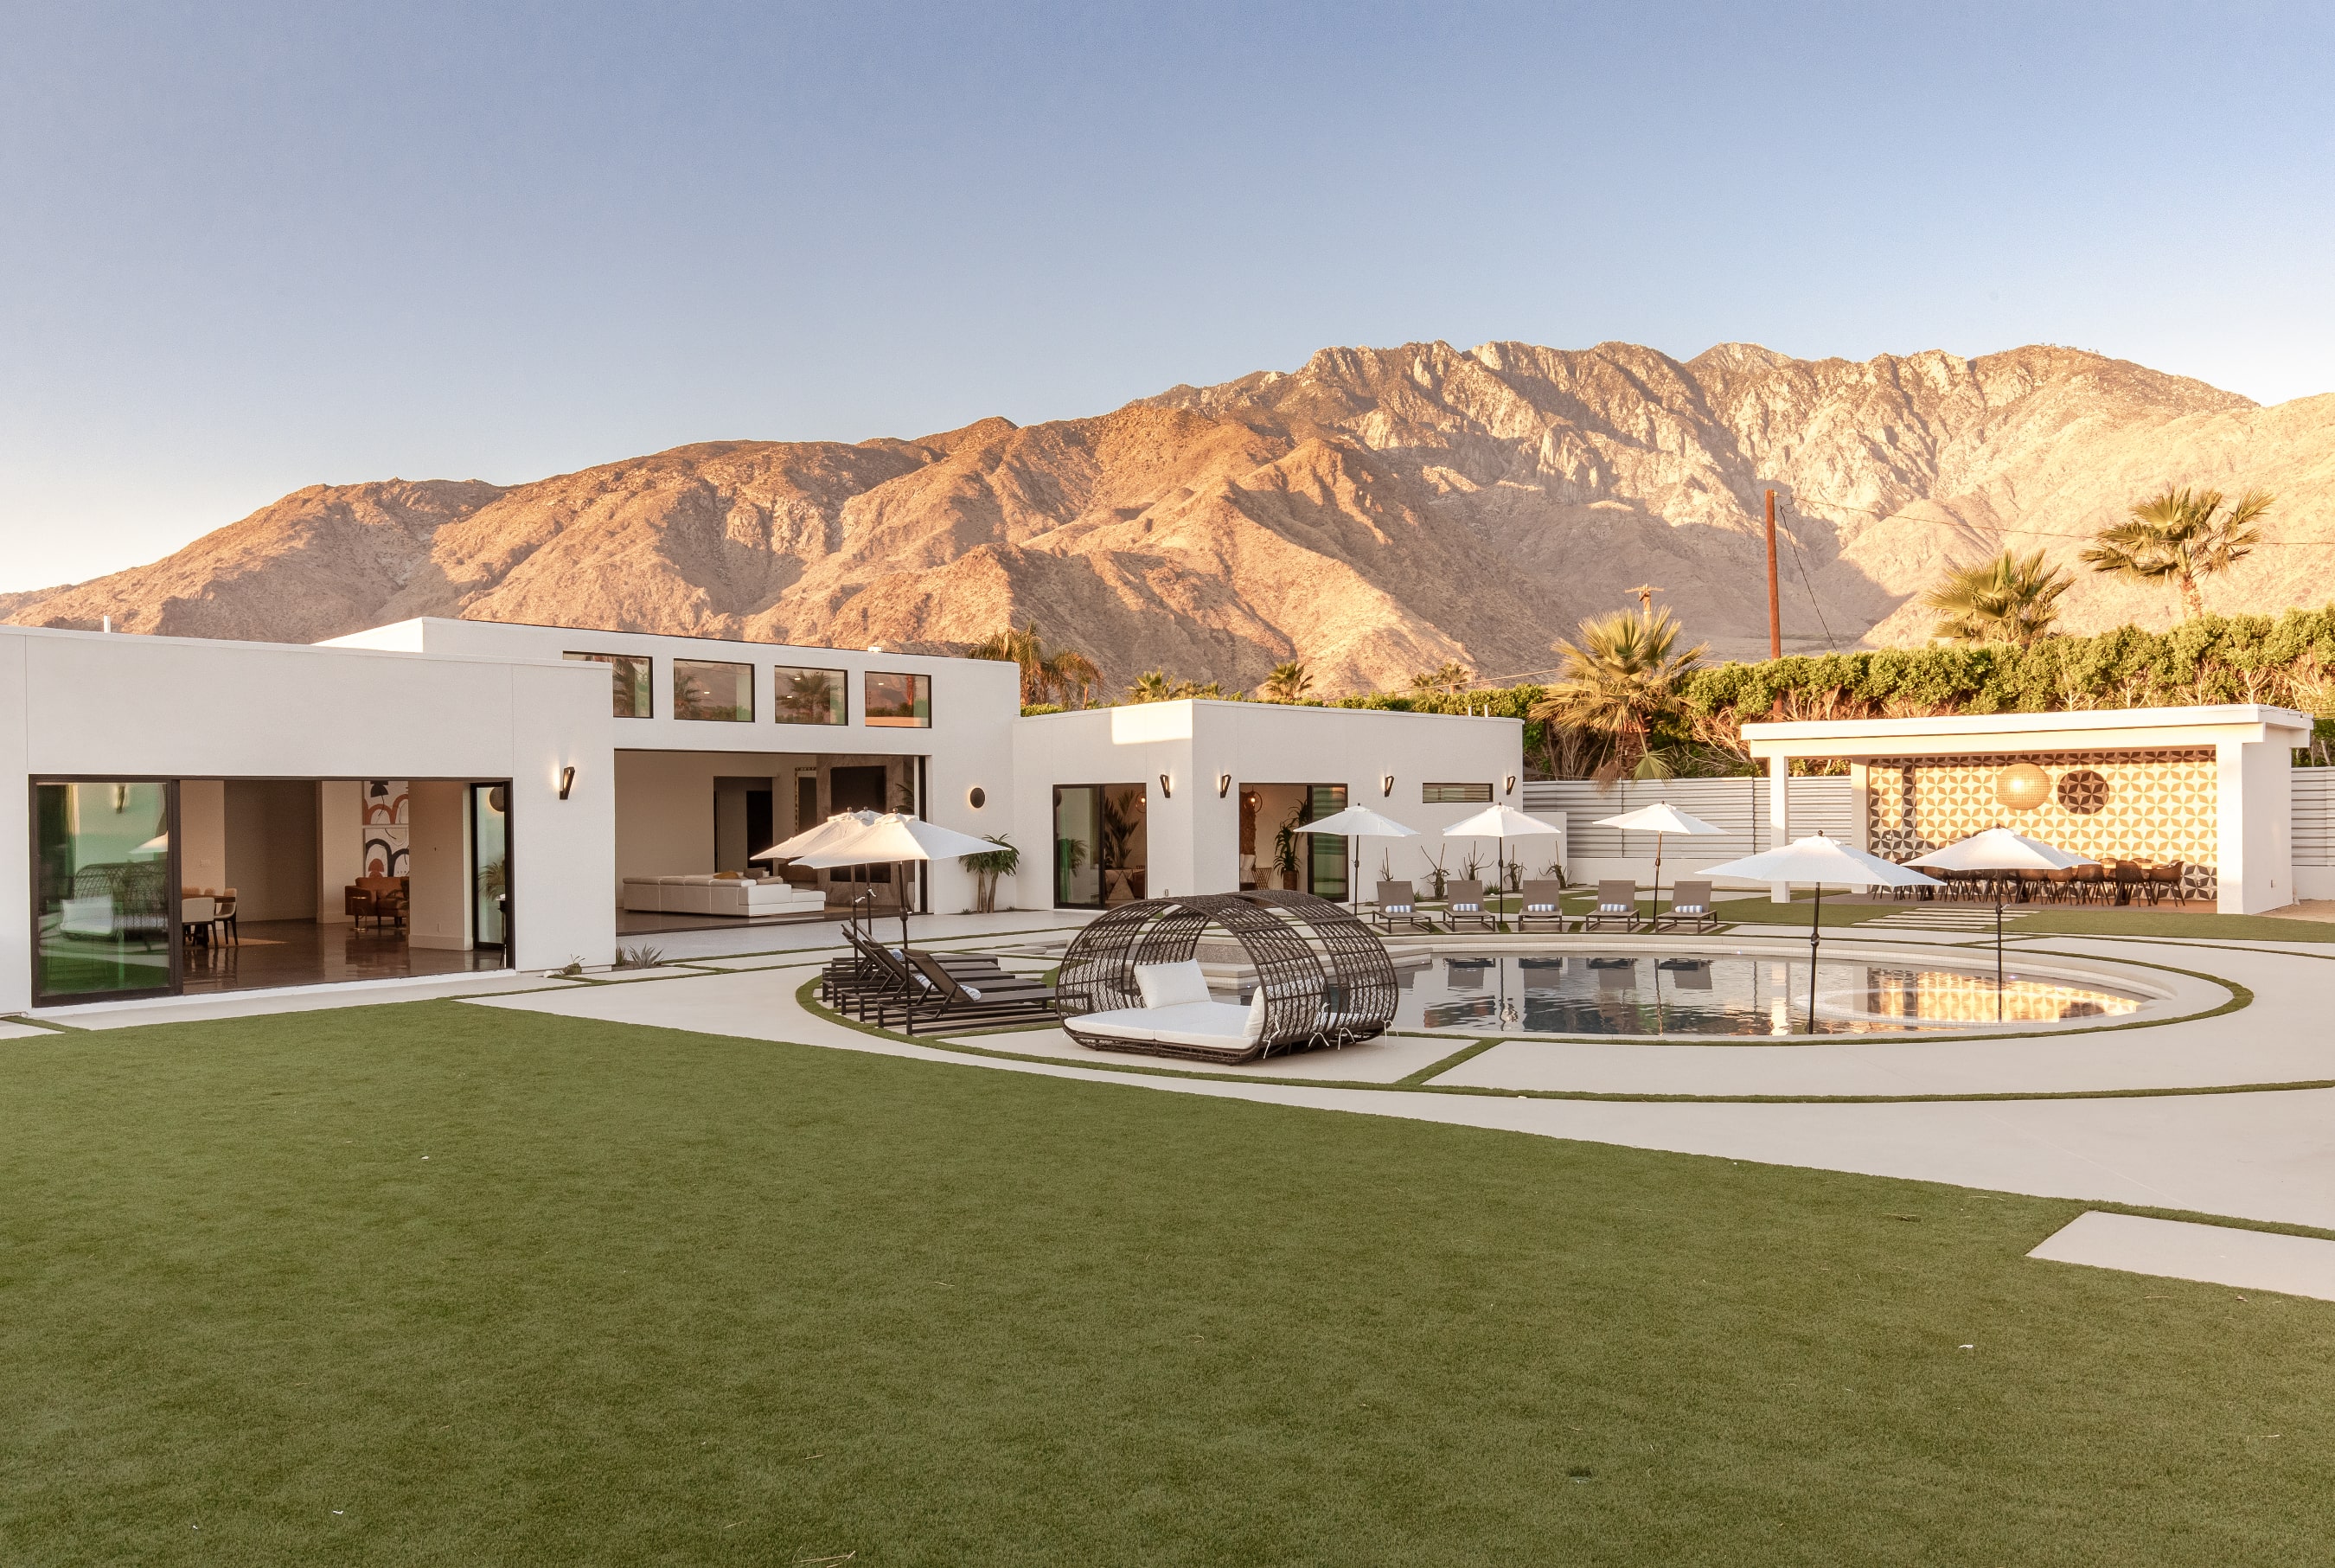 Palm Springs, California: Esta amplia escapada en el desierto se ubica solo a un par de horas en automóvil desde Los Ángeles. El impresionante espacio al aire libre incluye una piscina privada y un pabellón para ver el atardecer.